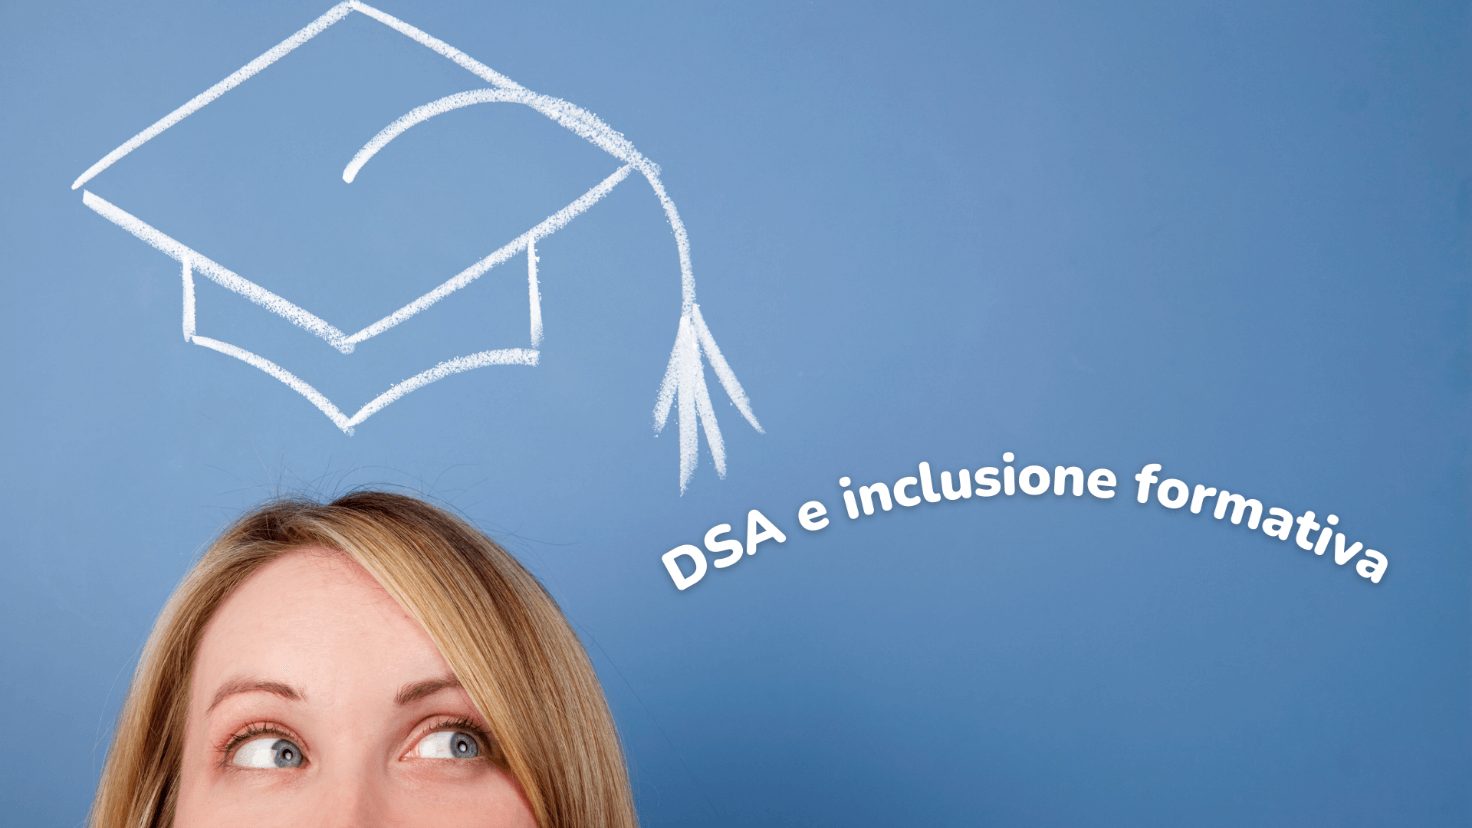 news sui DSA e inclusione formativa negli atenei